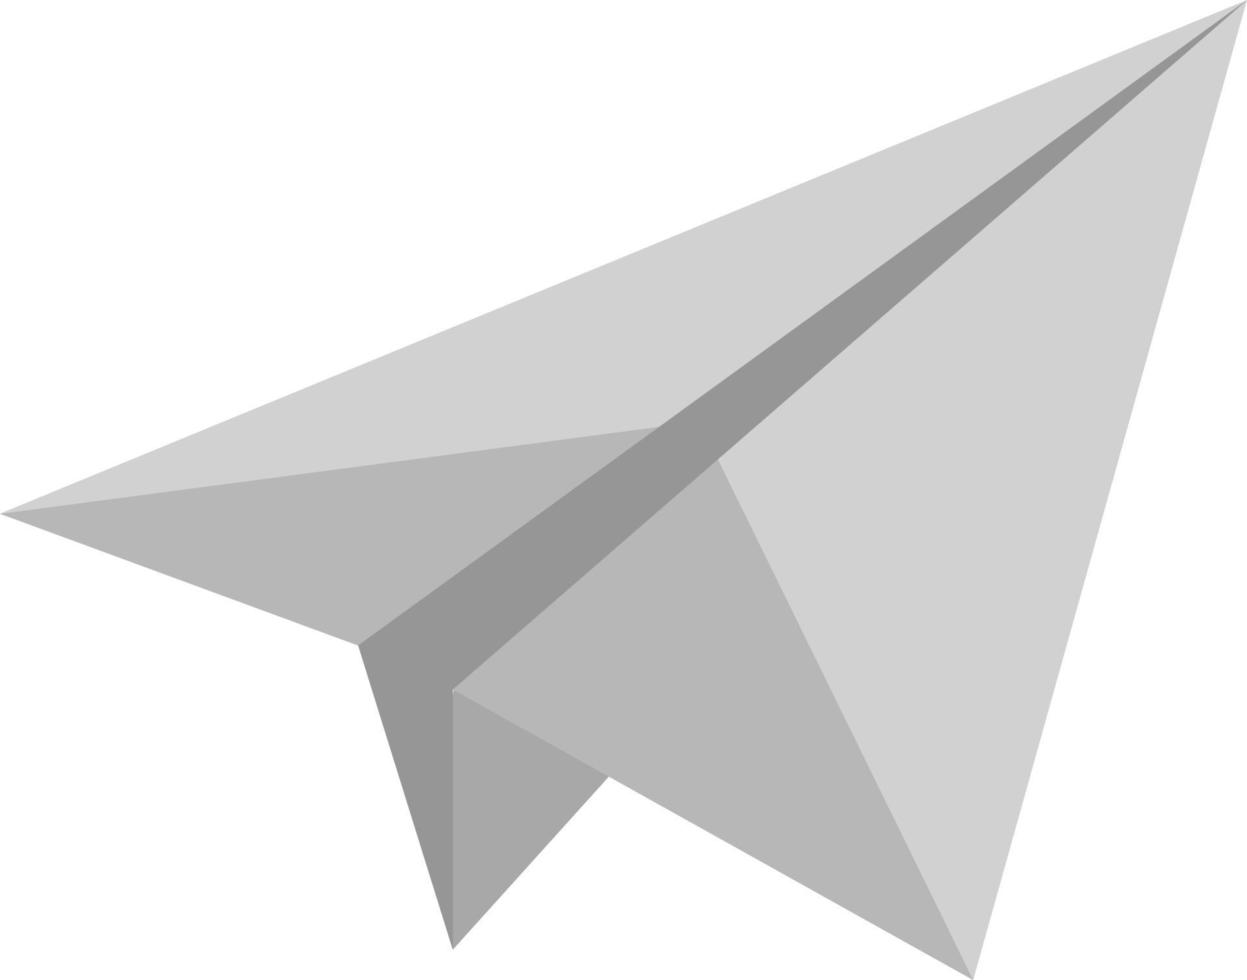 avião de papel, ilustração, vetor em fundo branco.